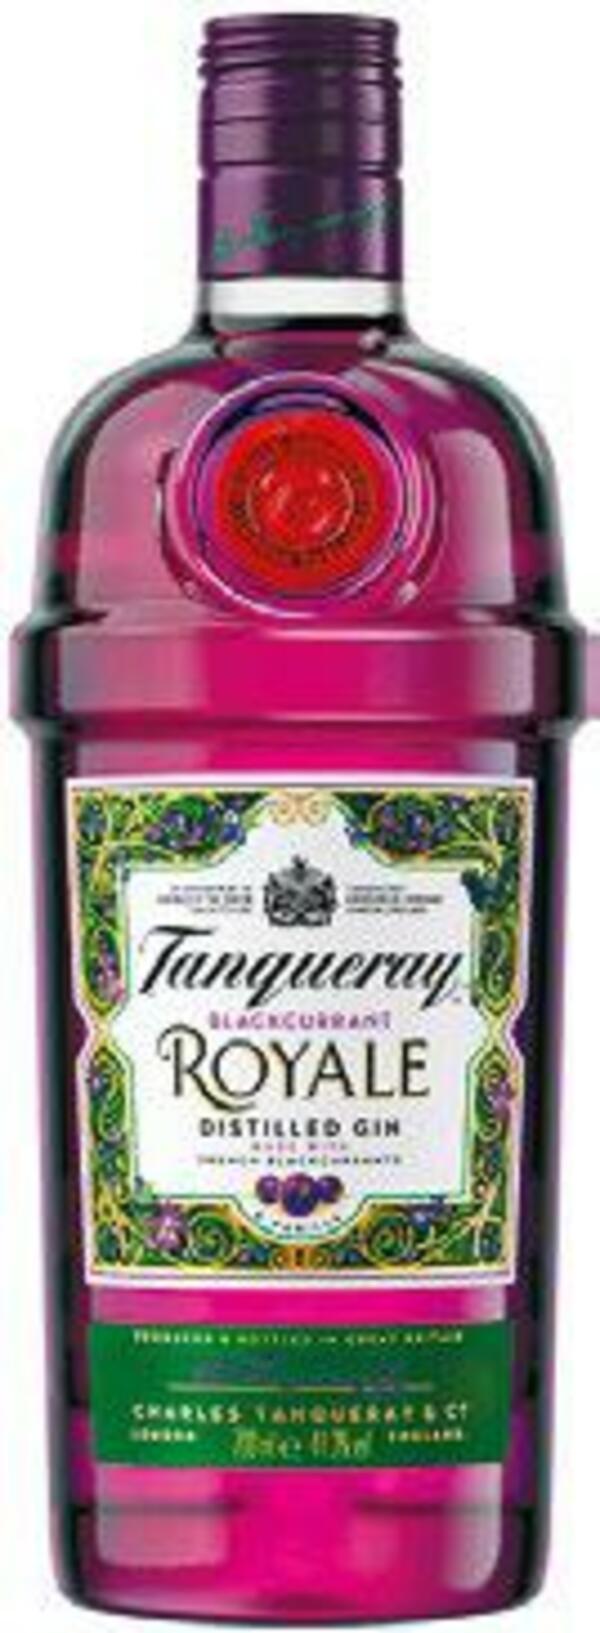 Bild 1 von Tanqueray London Dry Gin, Sevilla oder Royale